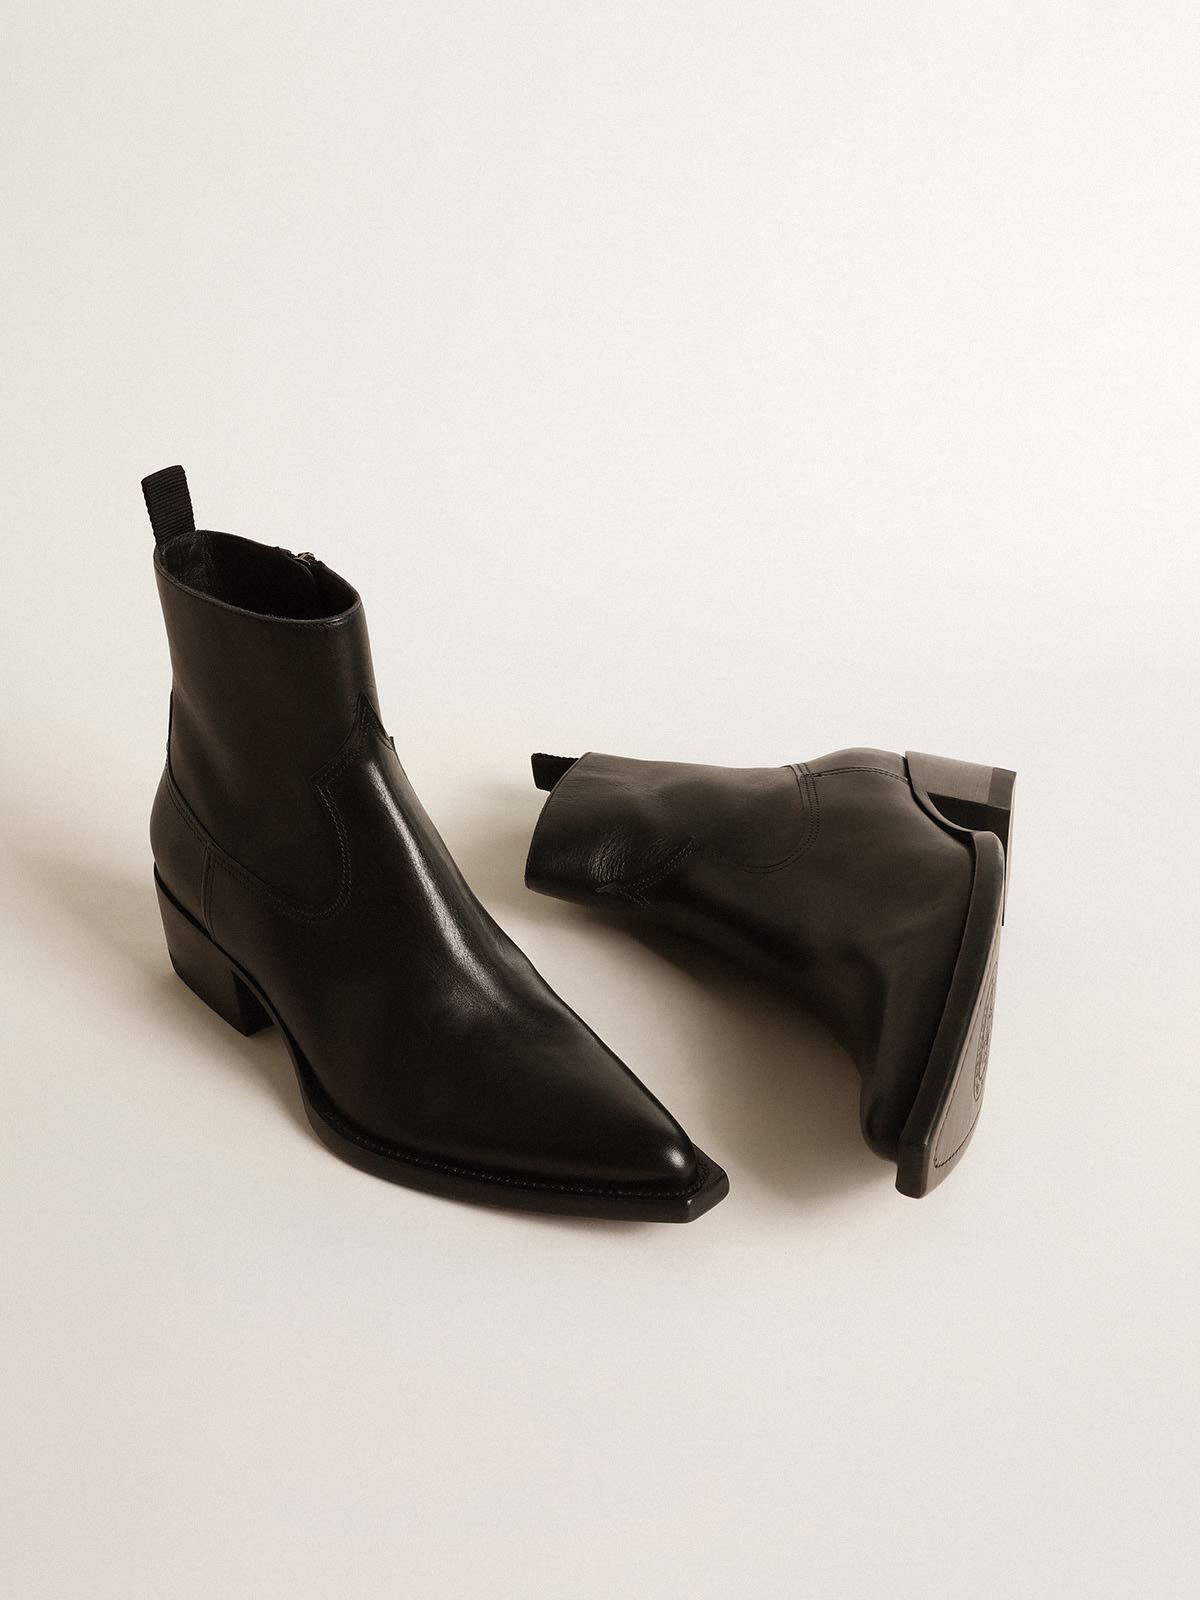 Golden Goose - Men’s low Debbie boots in black leather in 